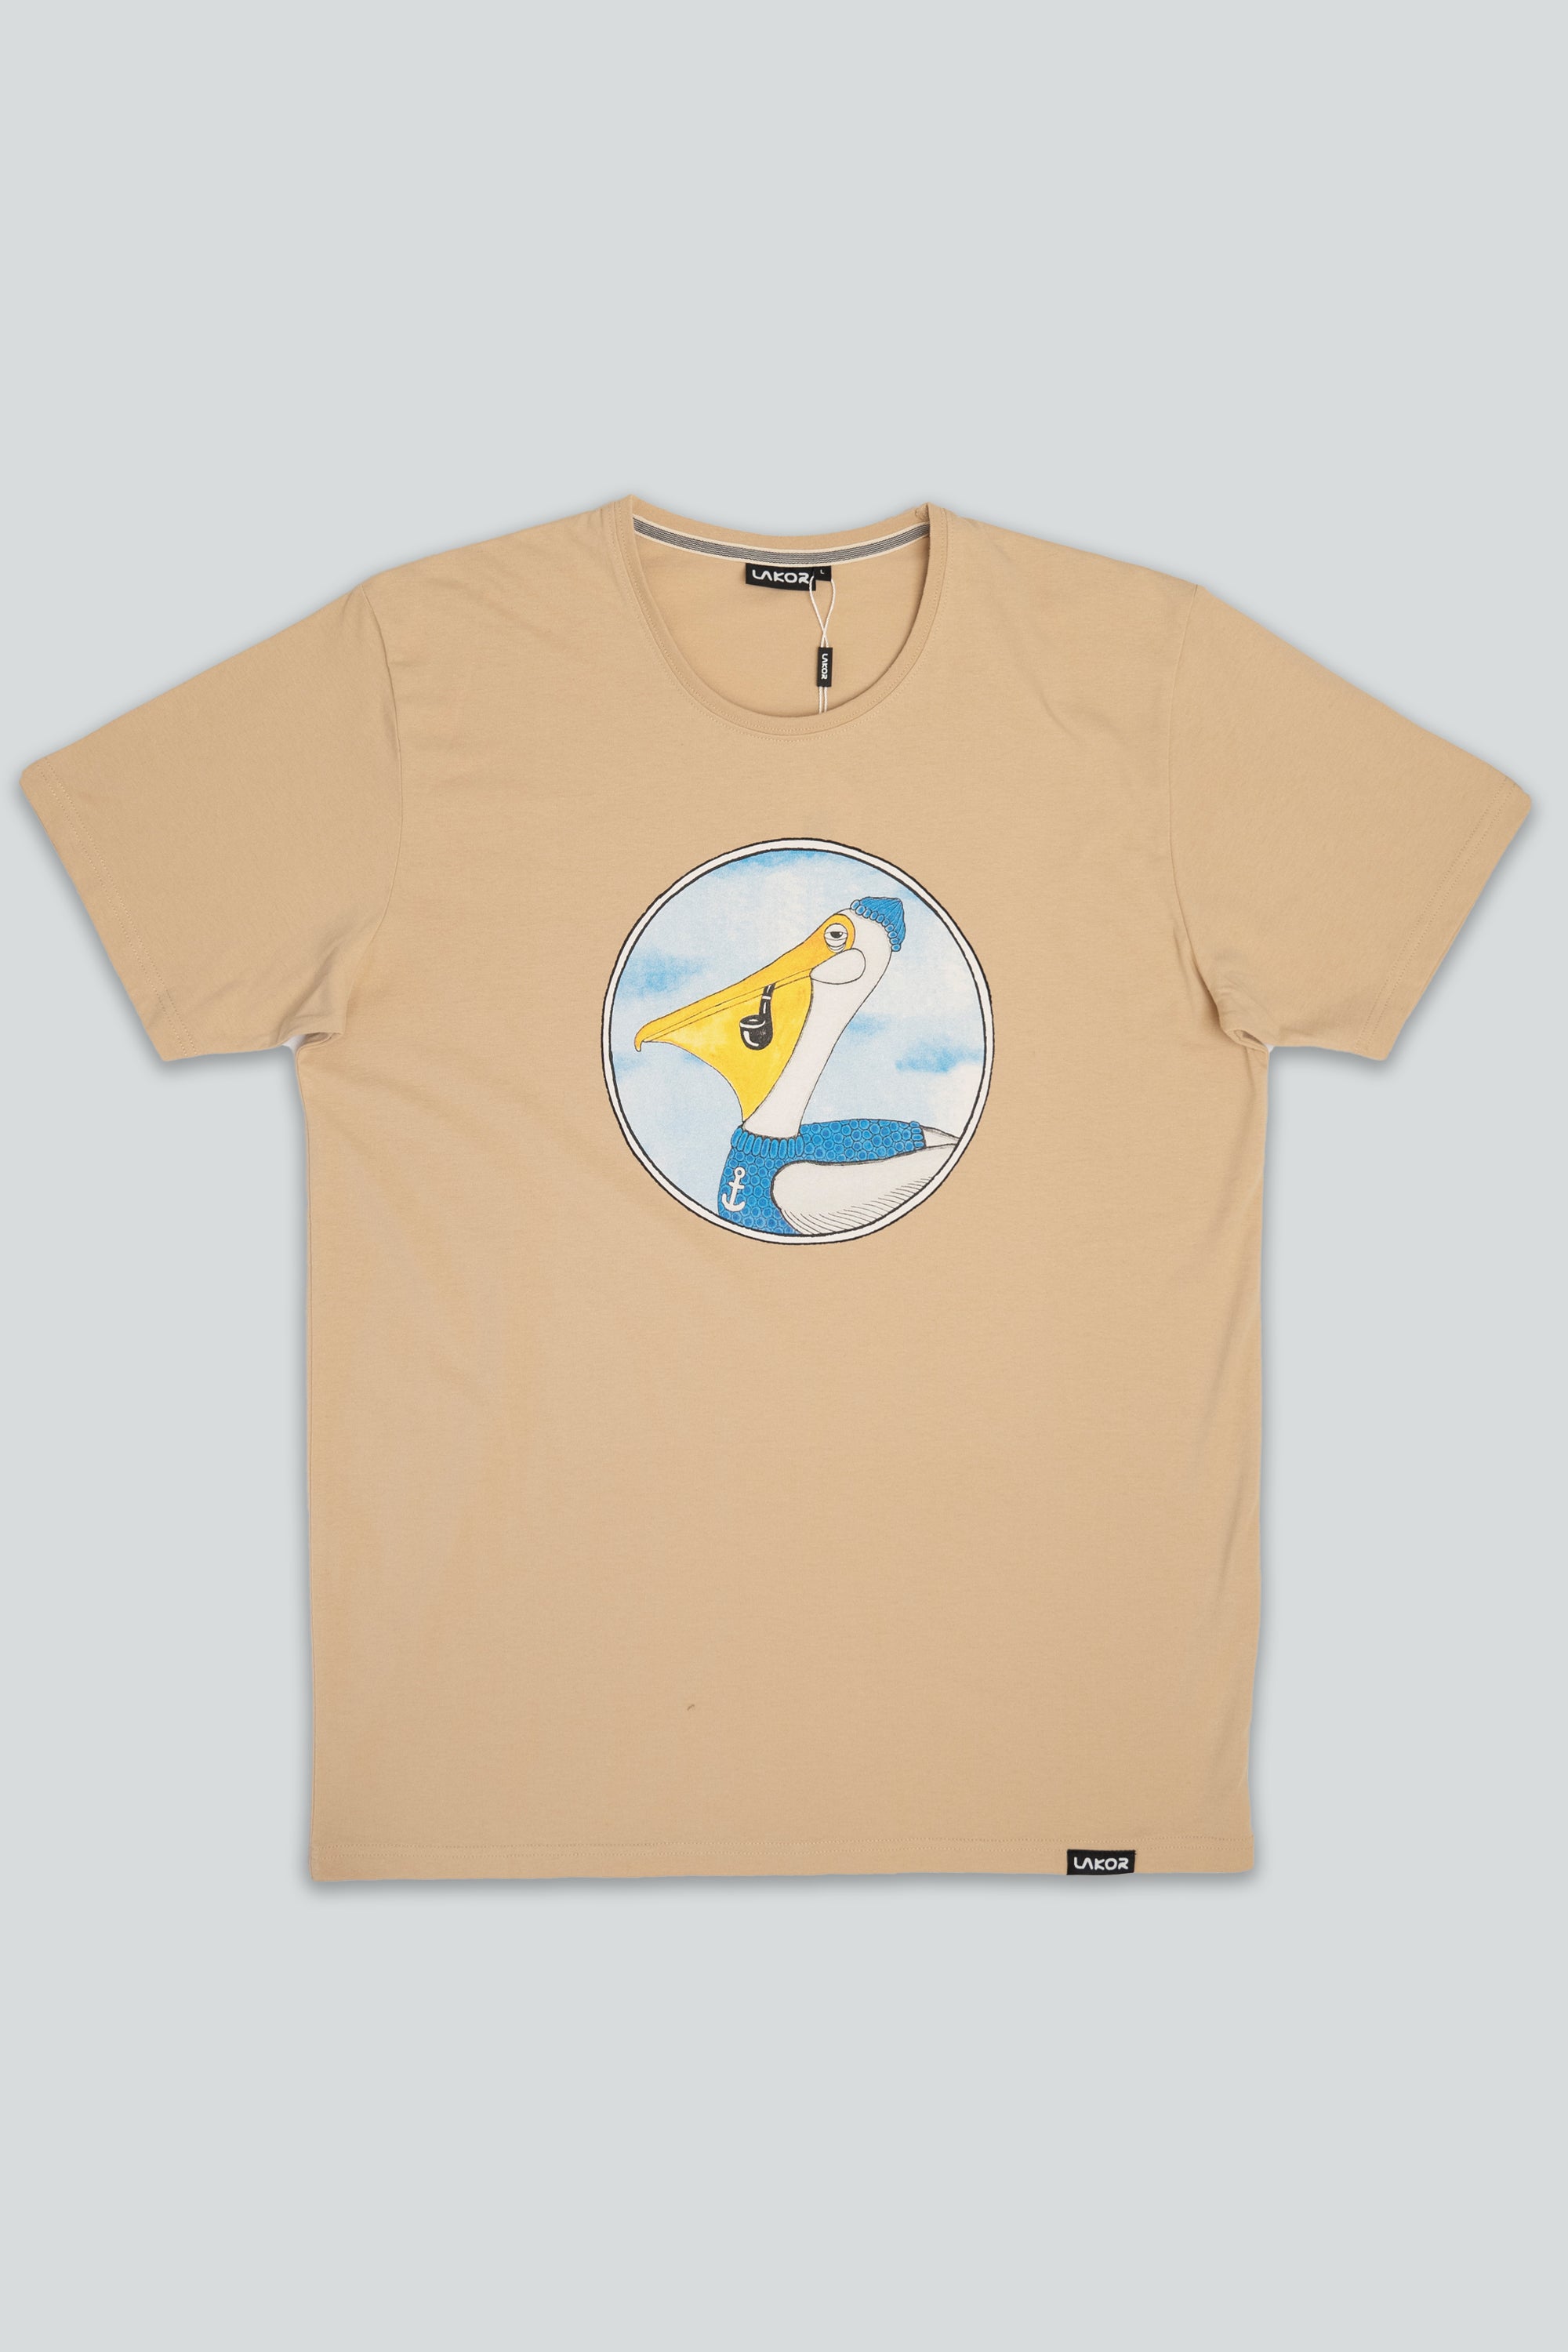 Pipe Pelican T-shirt (Light Brown)